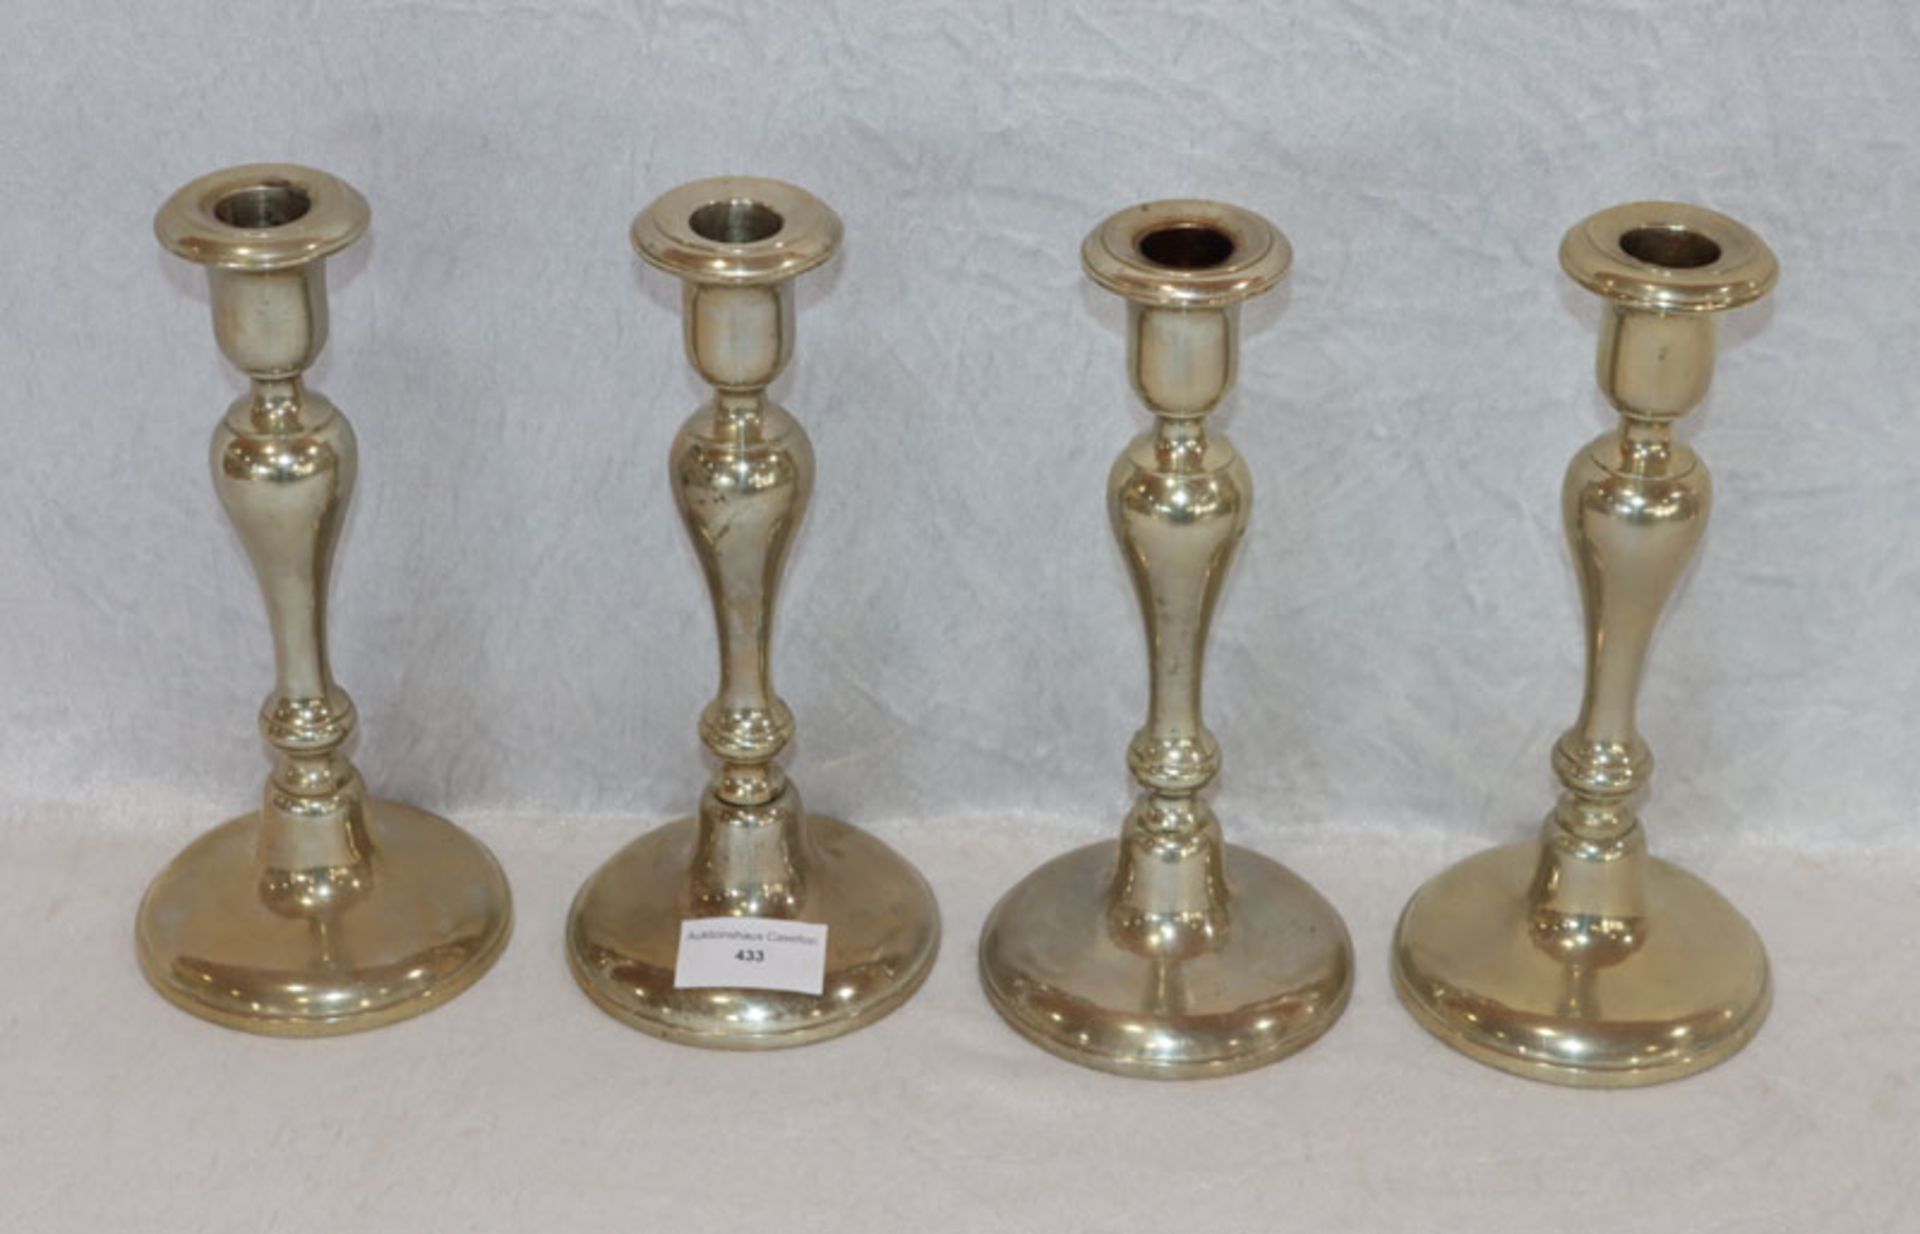 4 gleiche Kerzenleuchter, versilbert, H 22 cm, D 10 cm, teils verbeult, Gebrauchsspuren